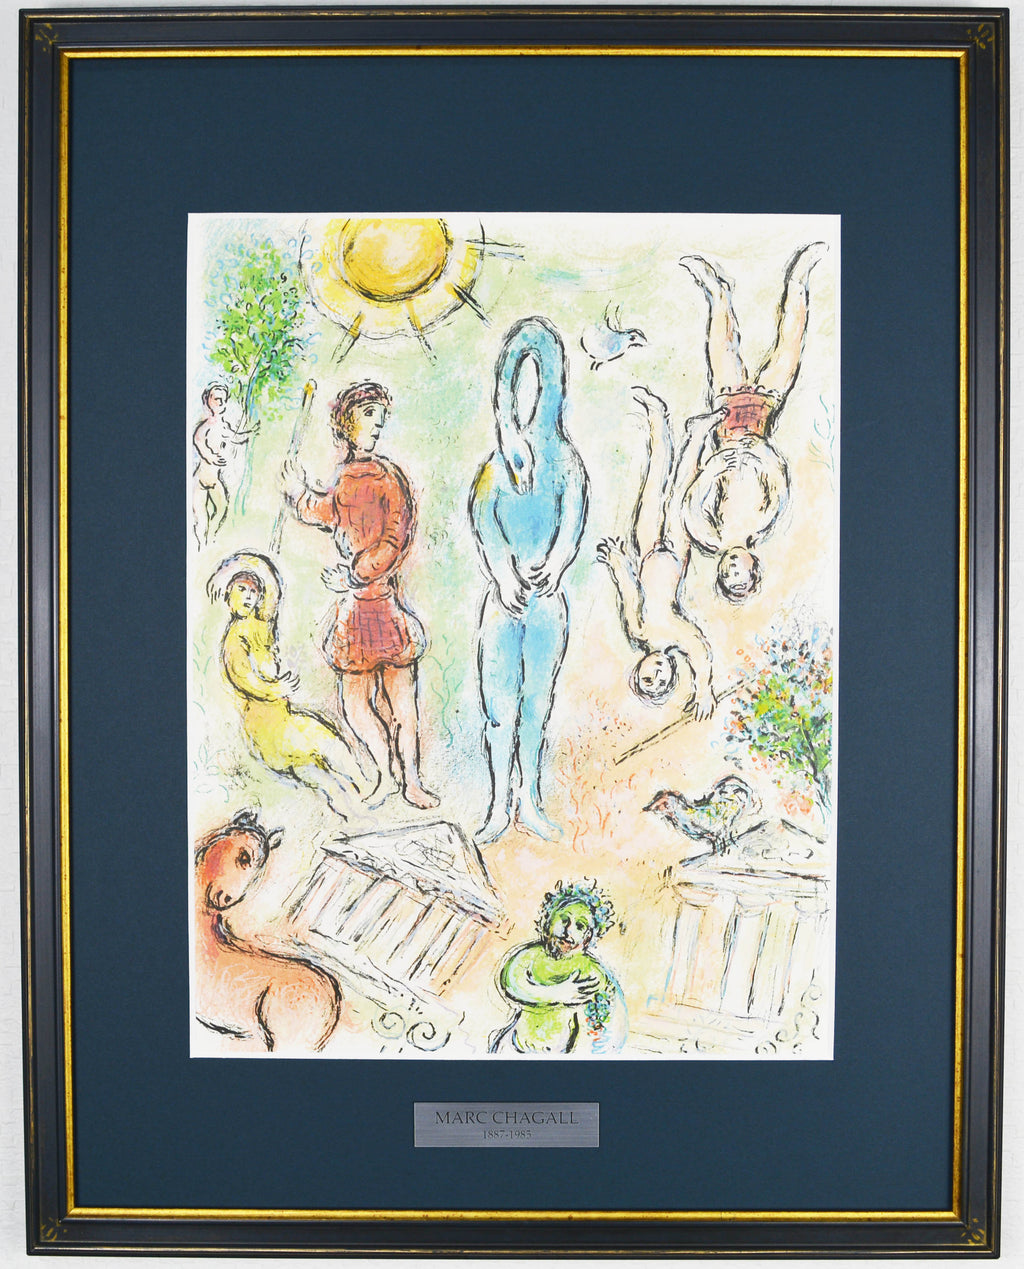 愛と感情を謳い続けた色彩の魔術師 二十世紀を代表する画家 マルク・シャガール リトグラフ 「オデッセイ」 【正光画廊】 - 美術品